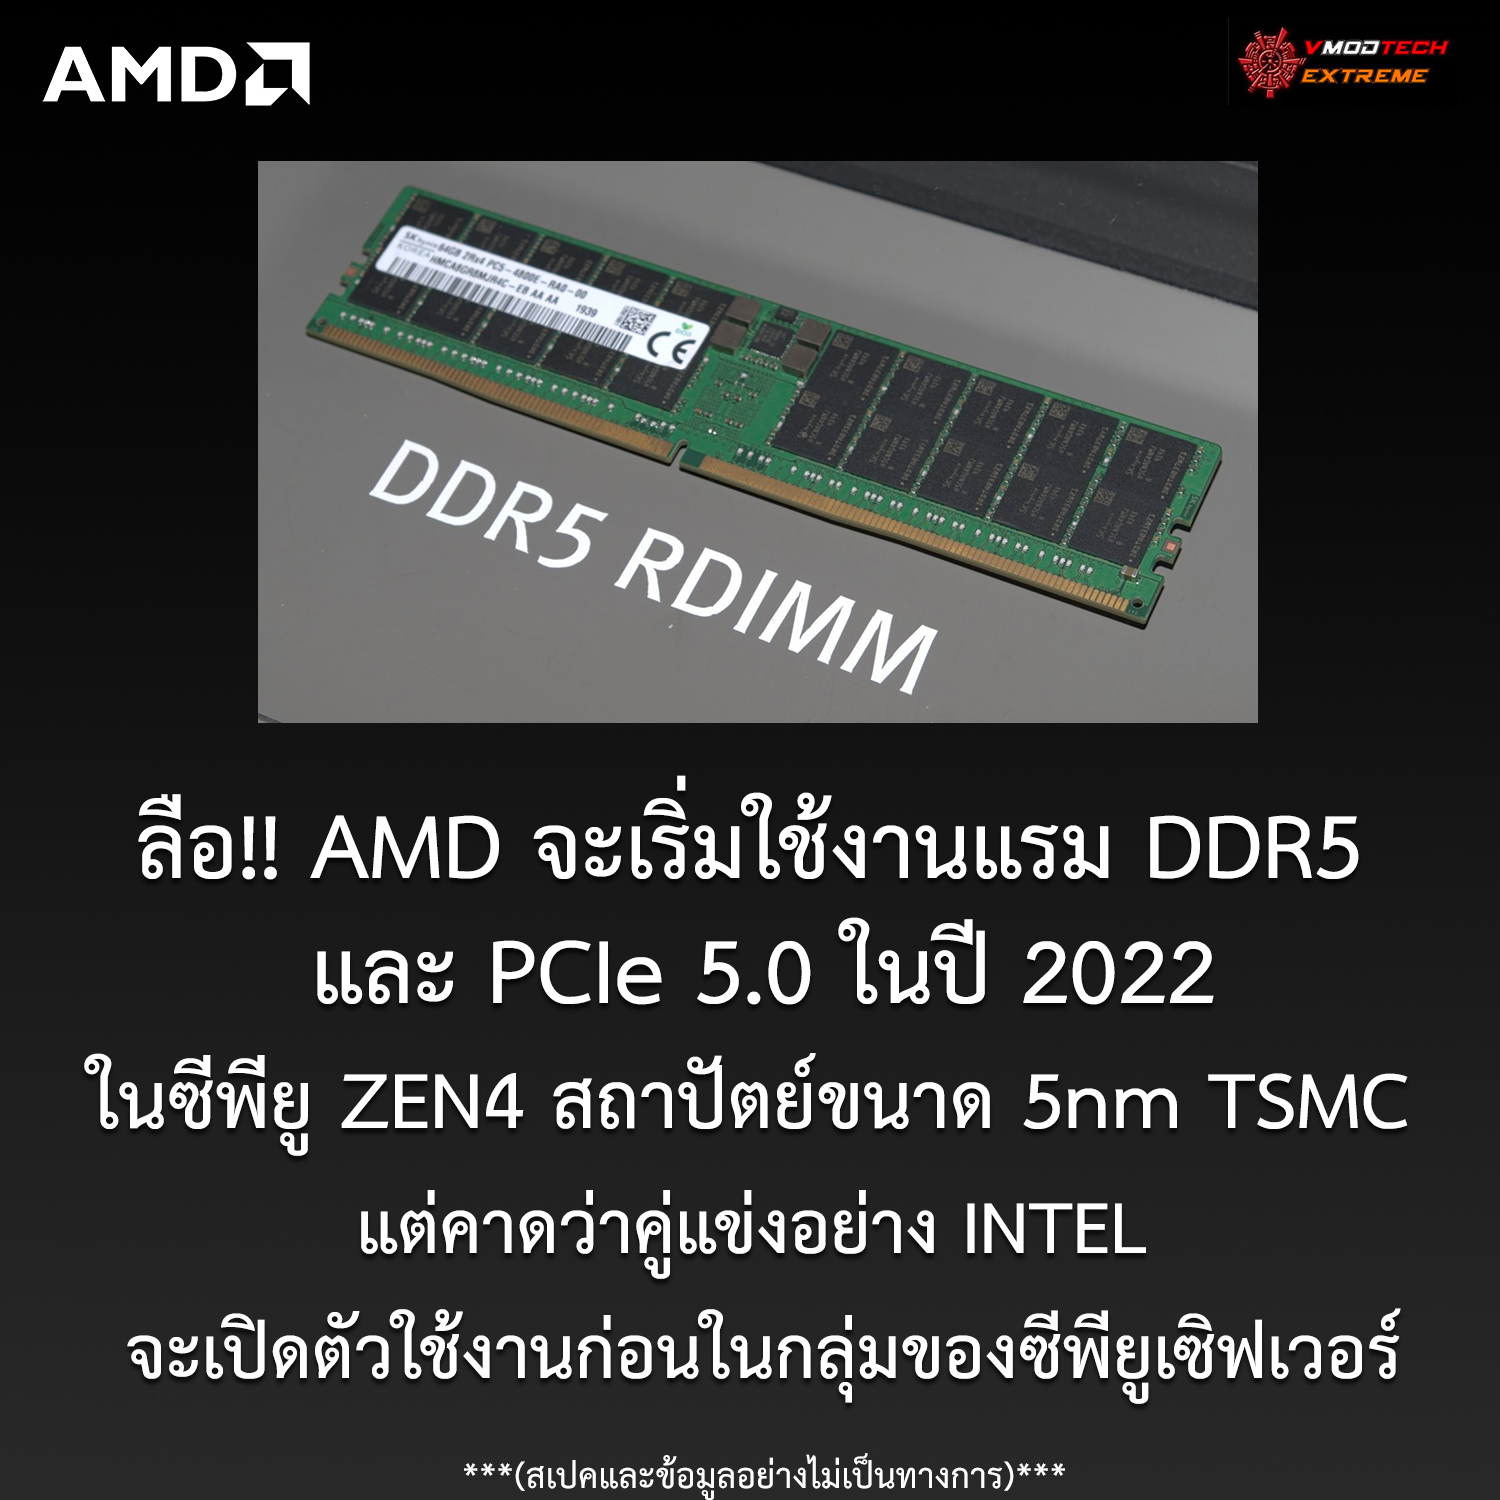 amd zen4 ddr5 pcie5 2022 ลือ!! AMD จะเริ่มใช้งานแรมแบบ DDR5 และ PCIe 5.0 ในปี 2022 แต่คาดว่าคู่แข่งอย่าง INTEL จะเปิดตัวใช้งานก่อนในกลุ่มของเซิฟเวอร์